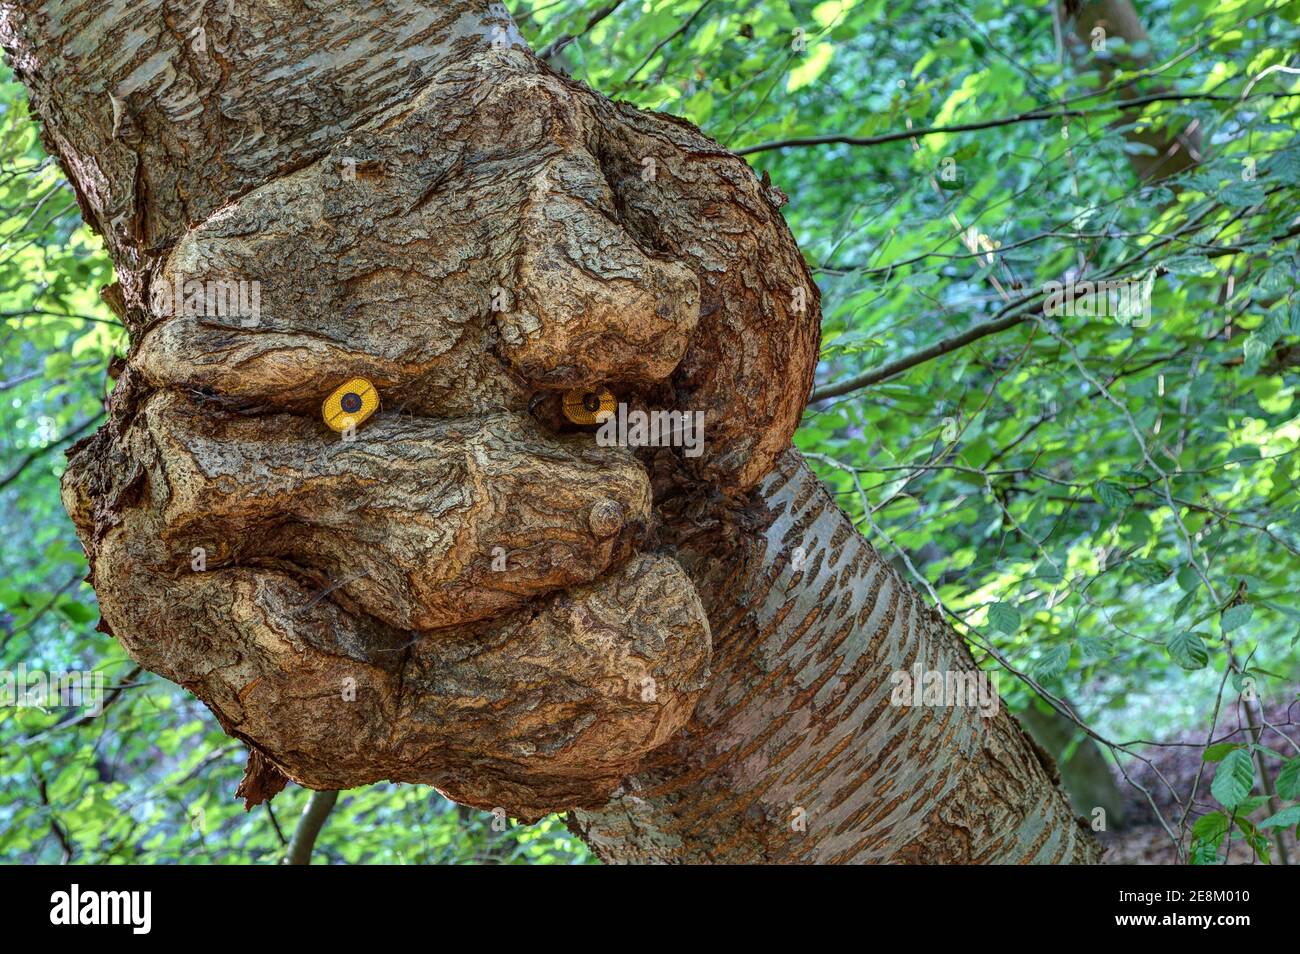 Ein Baumgeist blickt mit einem Lächeln vom Baumstamm herab und beobachtet den Wald. Bizarr deformierter Grat auf einem Baumstamm. Stockfoto